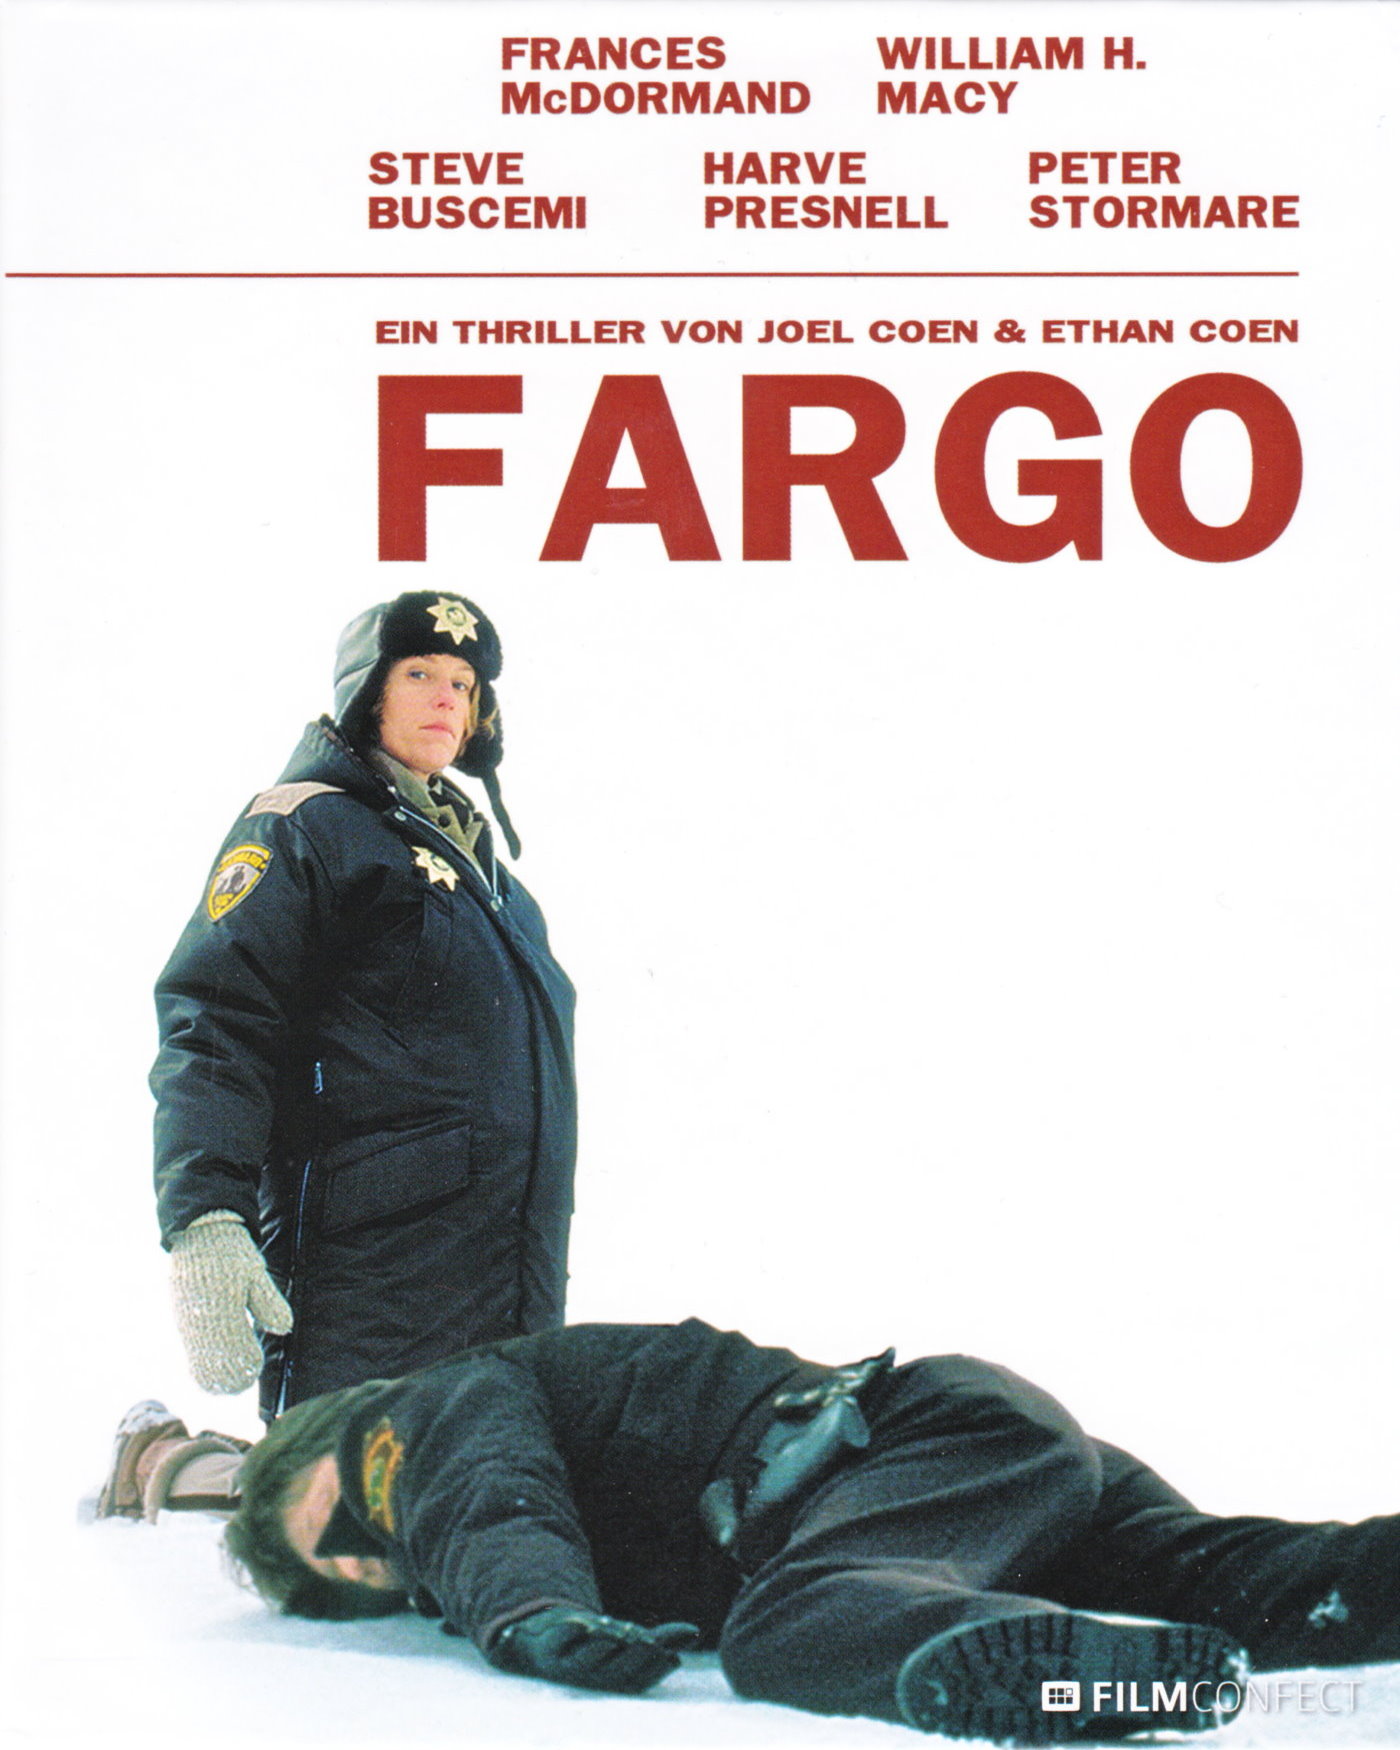 Cover - Fargo.jpg